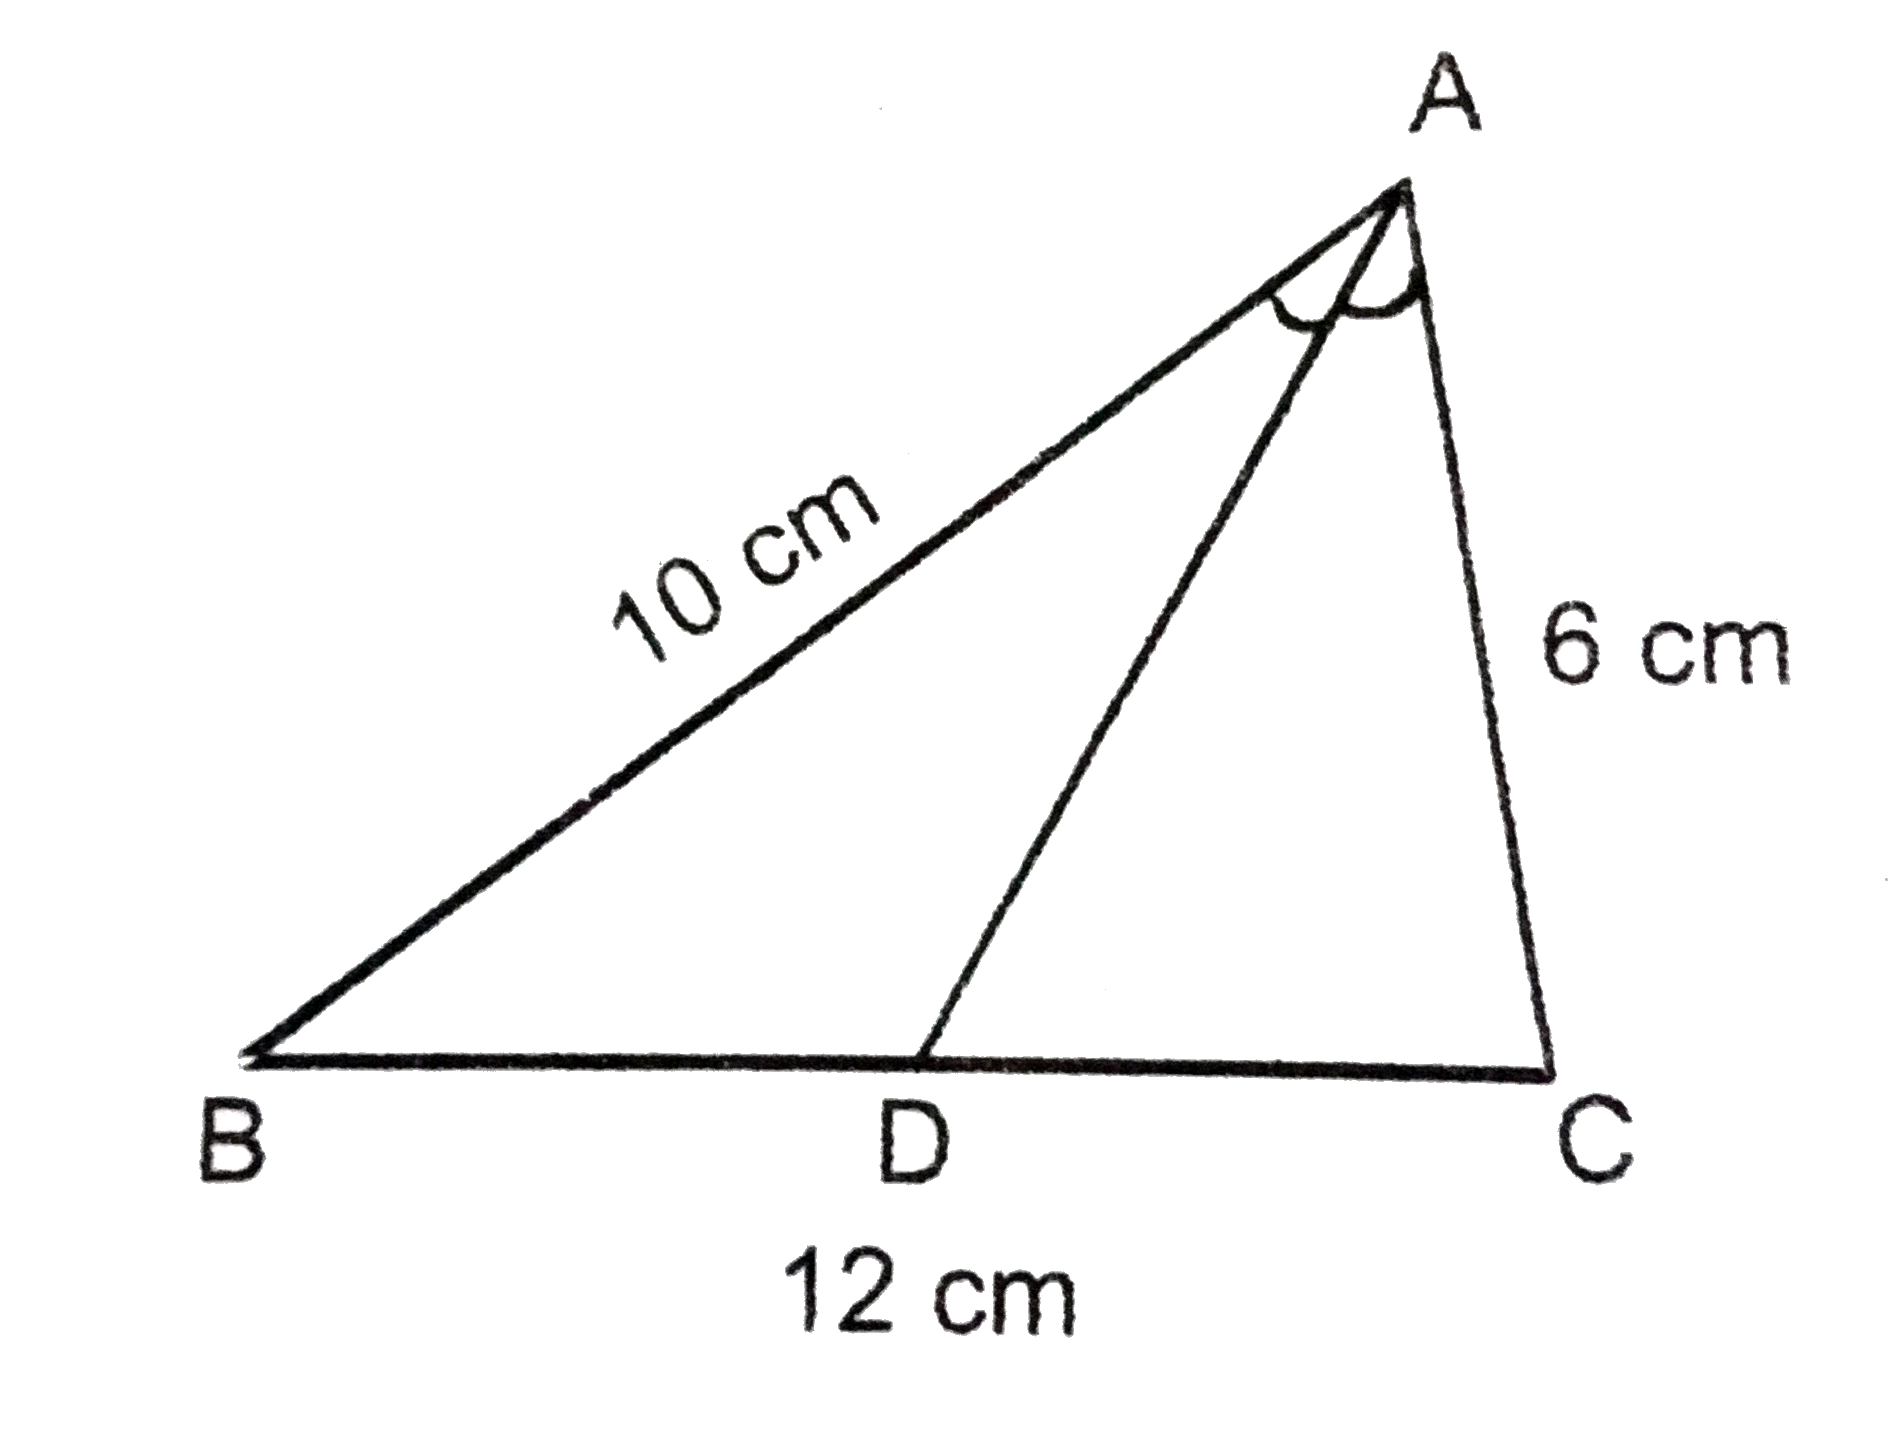 नीचे के चित्र में AD,angleBAC का अर्द्धक है । यदि AB=10cm,AC=6cm,BC=12cm तब BD का मान ज्ञात करें ।